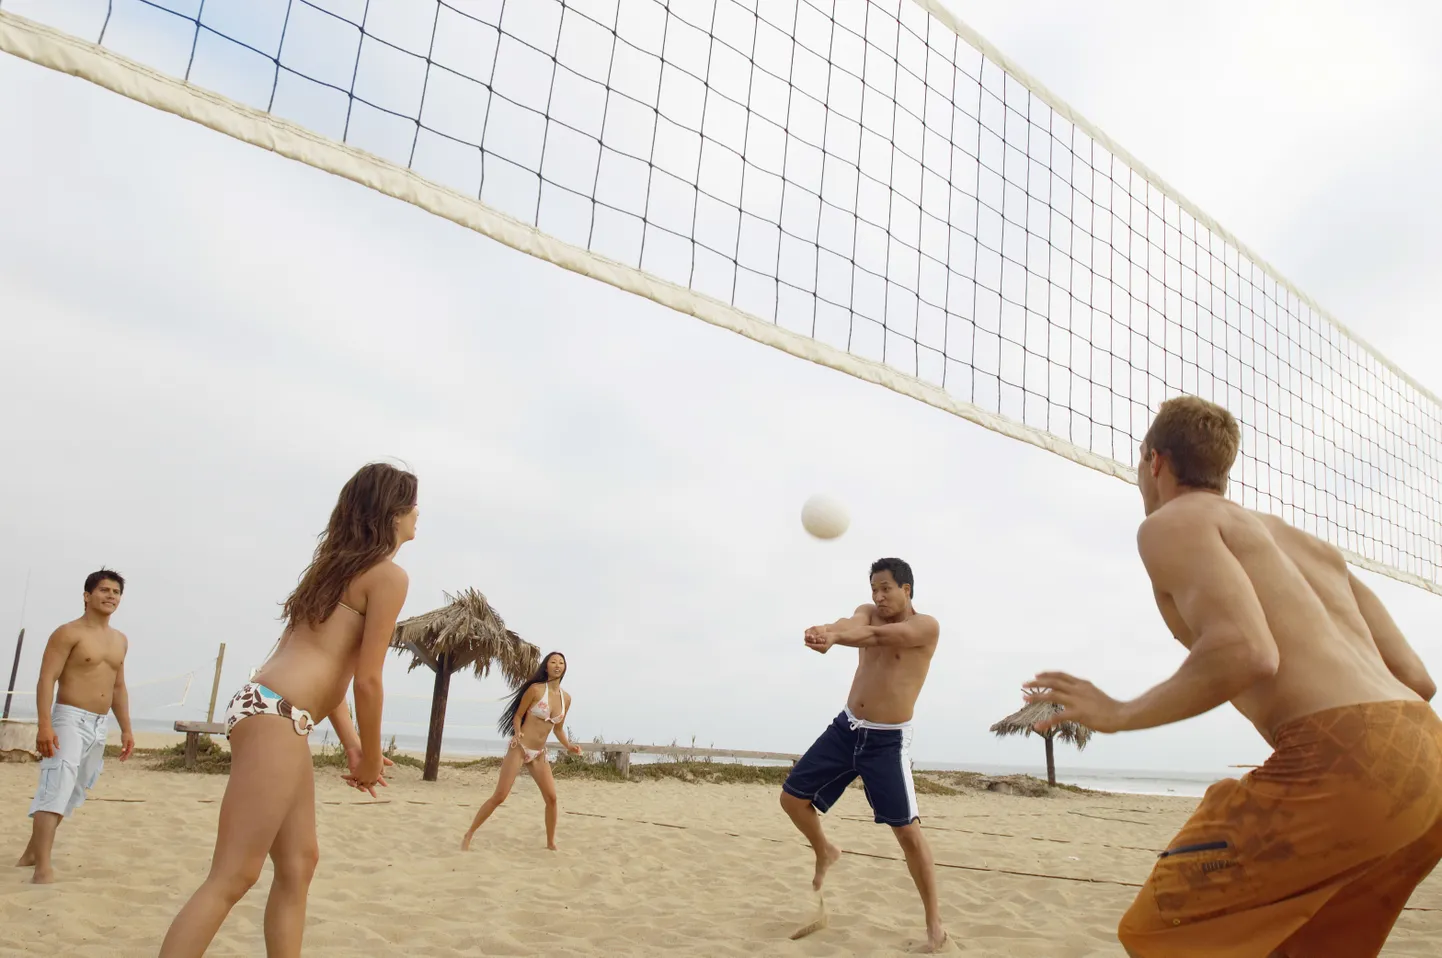 Волейбол - популярная летняя игра, в которую часто играют во время летних дней предприятий.